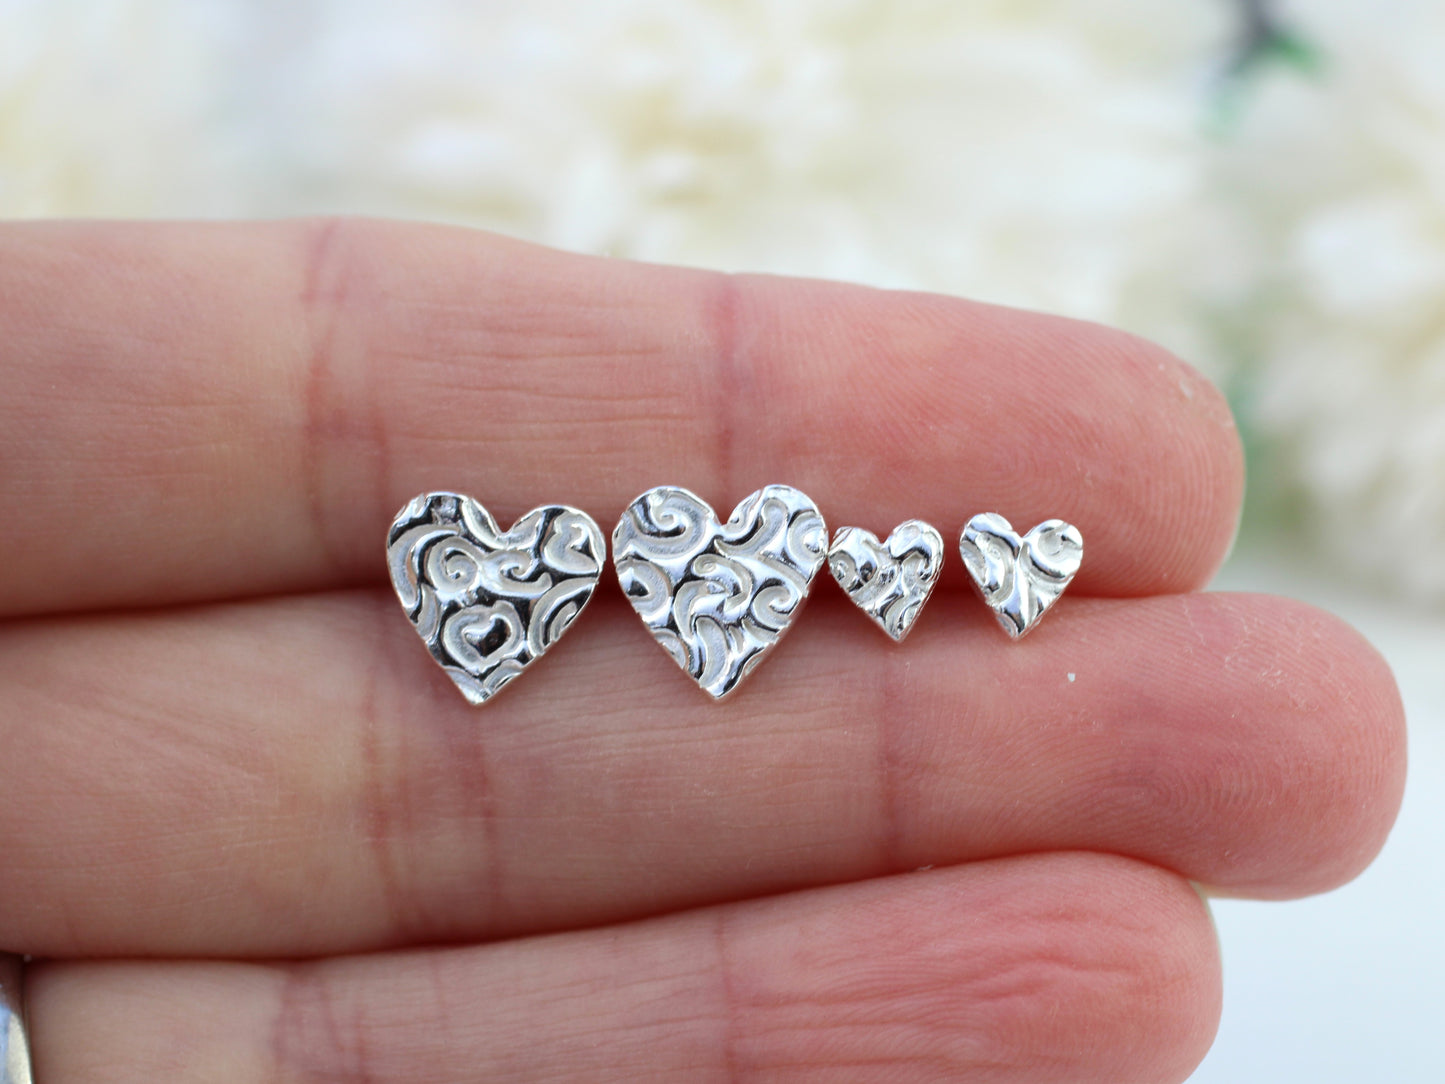 Pure silver heart stud earrings.